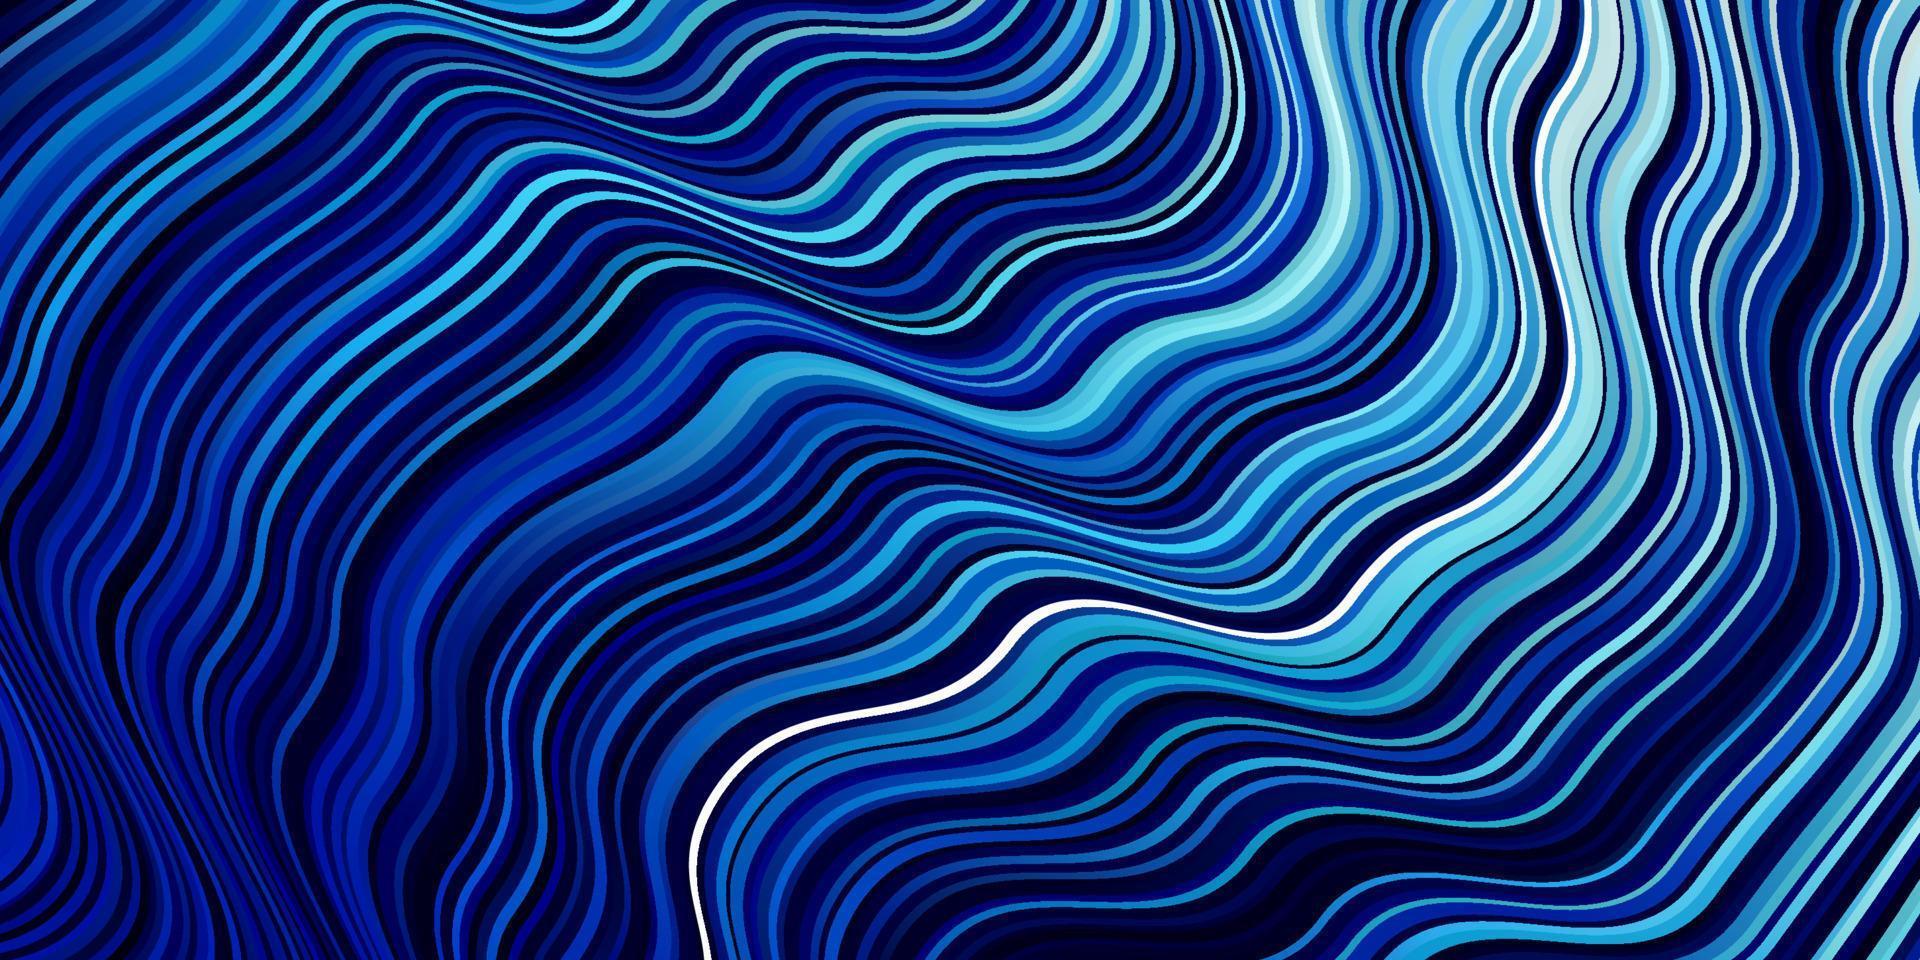 donkerblauw vector sjabloon met wrange lijnen.